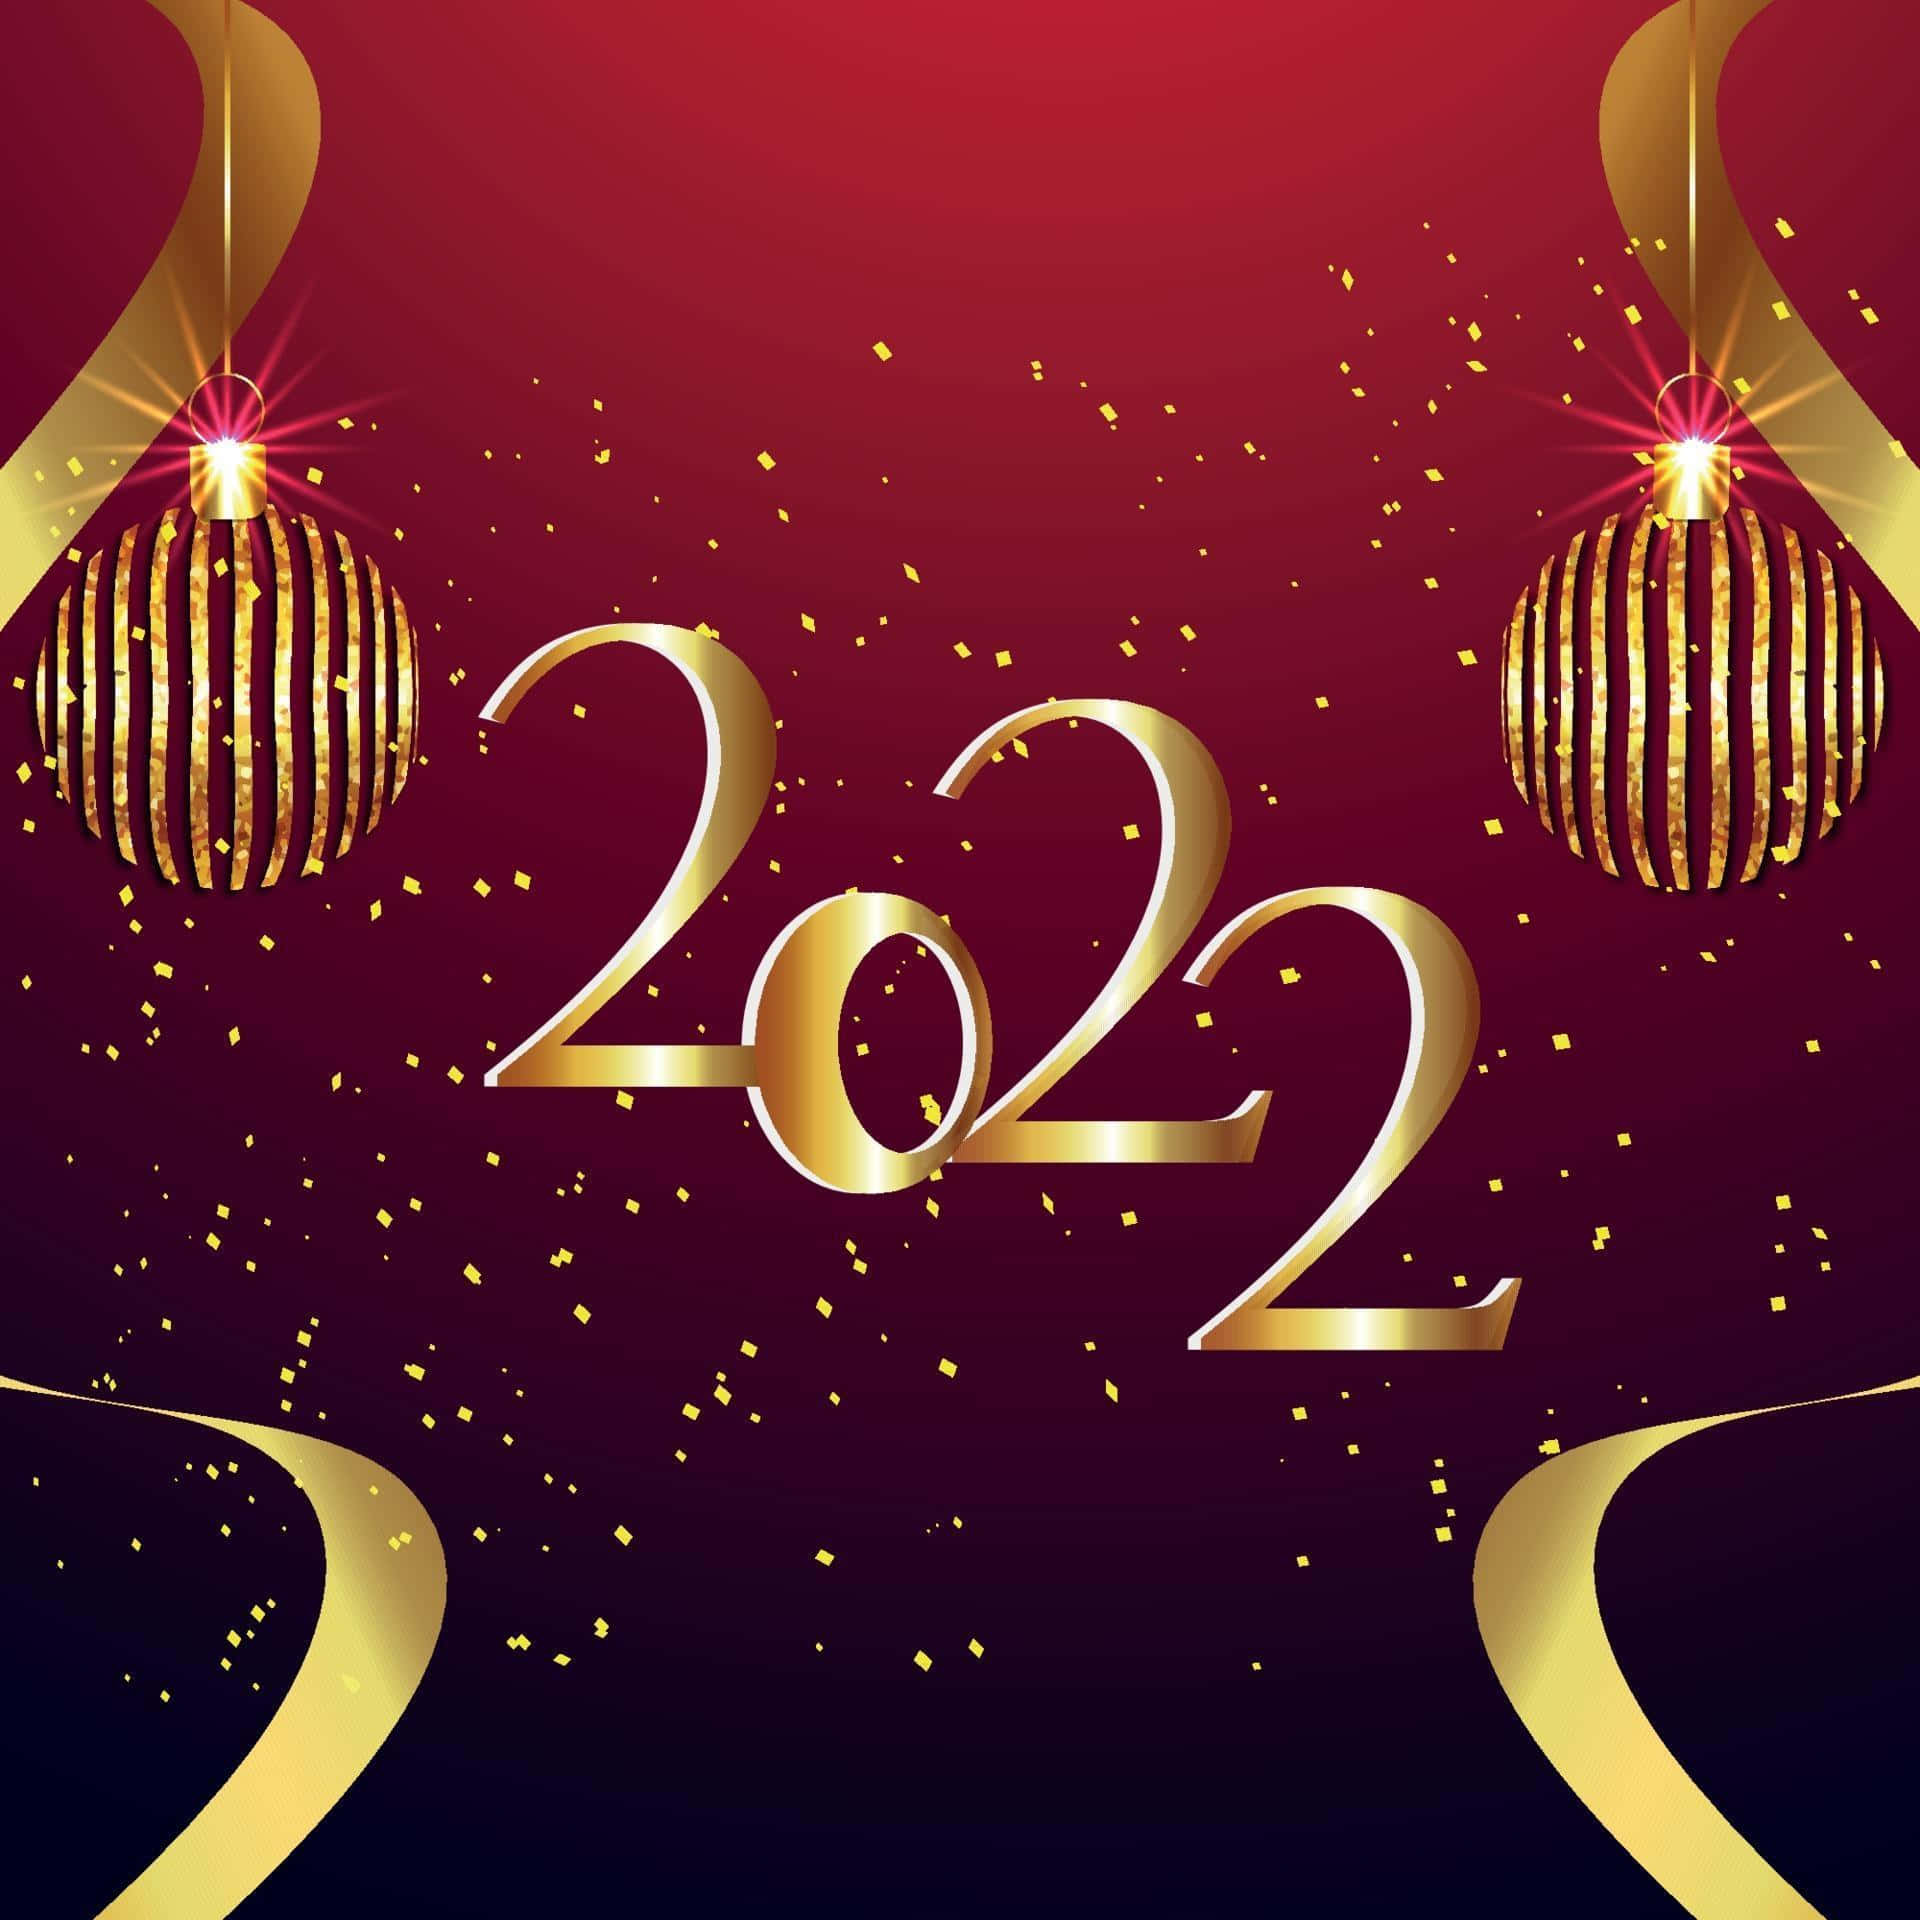 Ønskerdig Et Meget Glædeligt Nytår 2022!